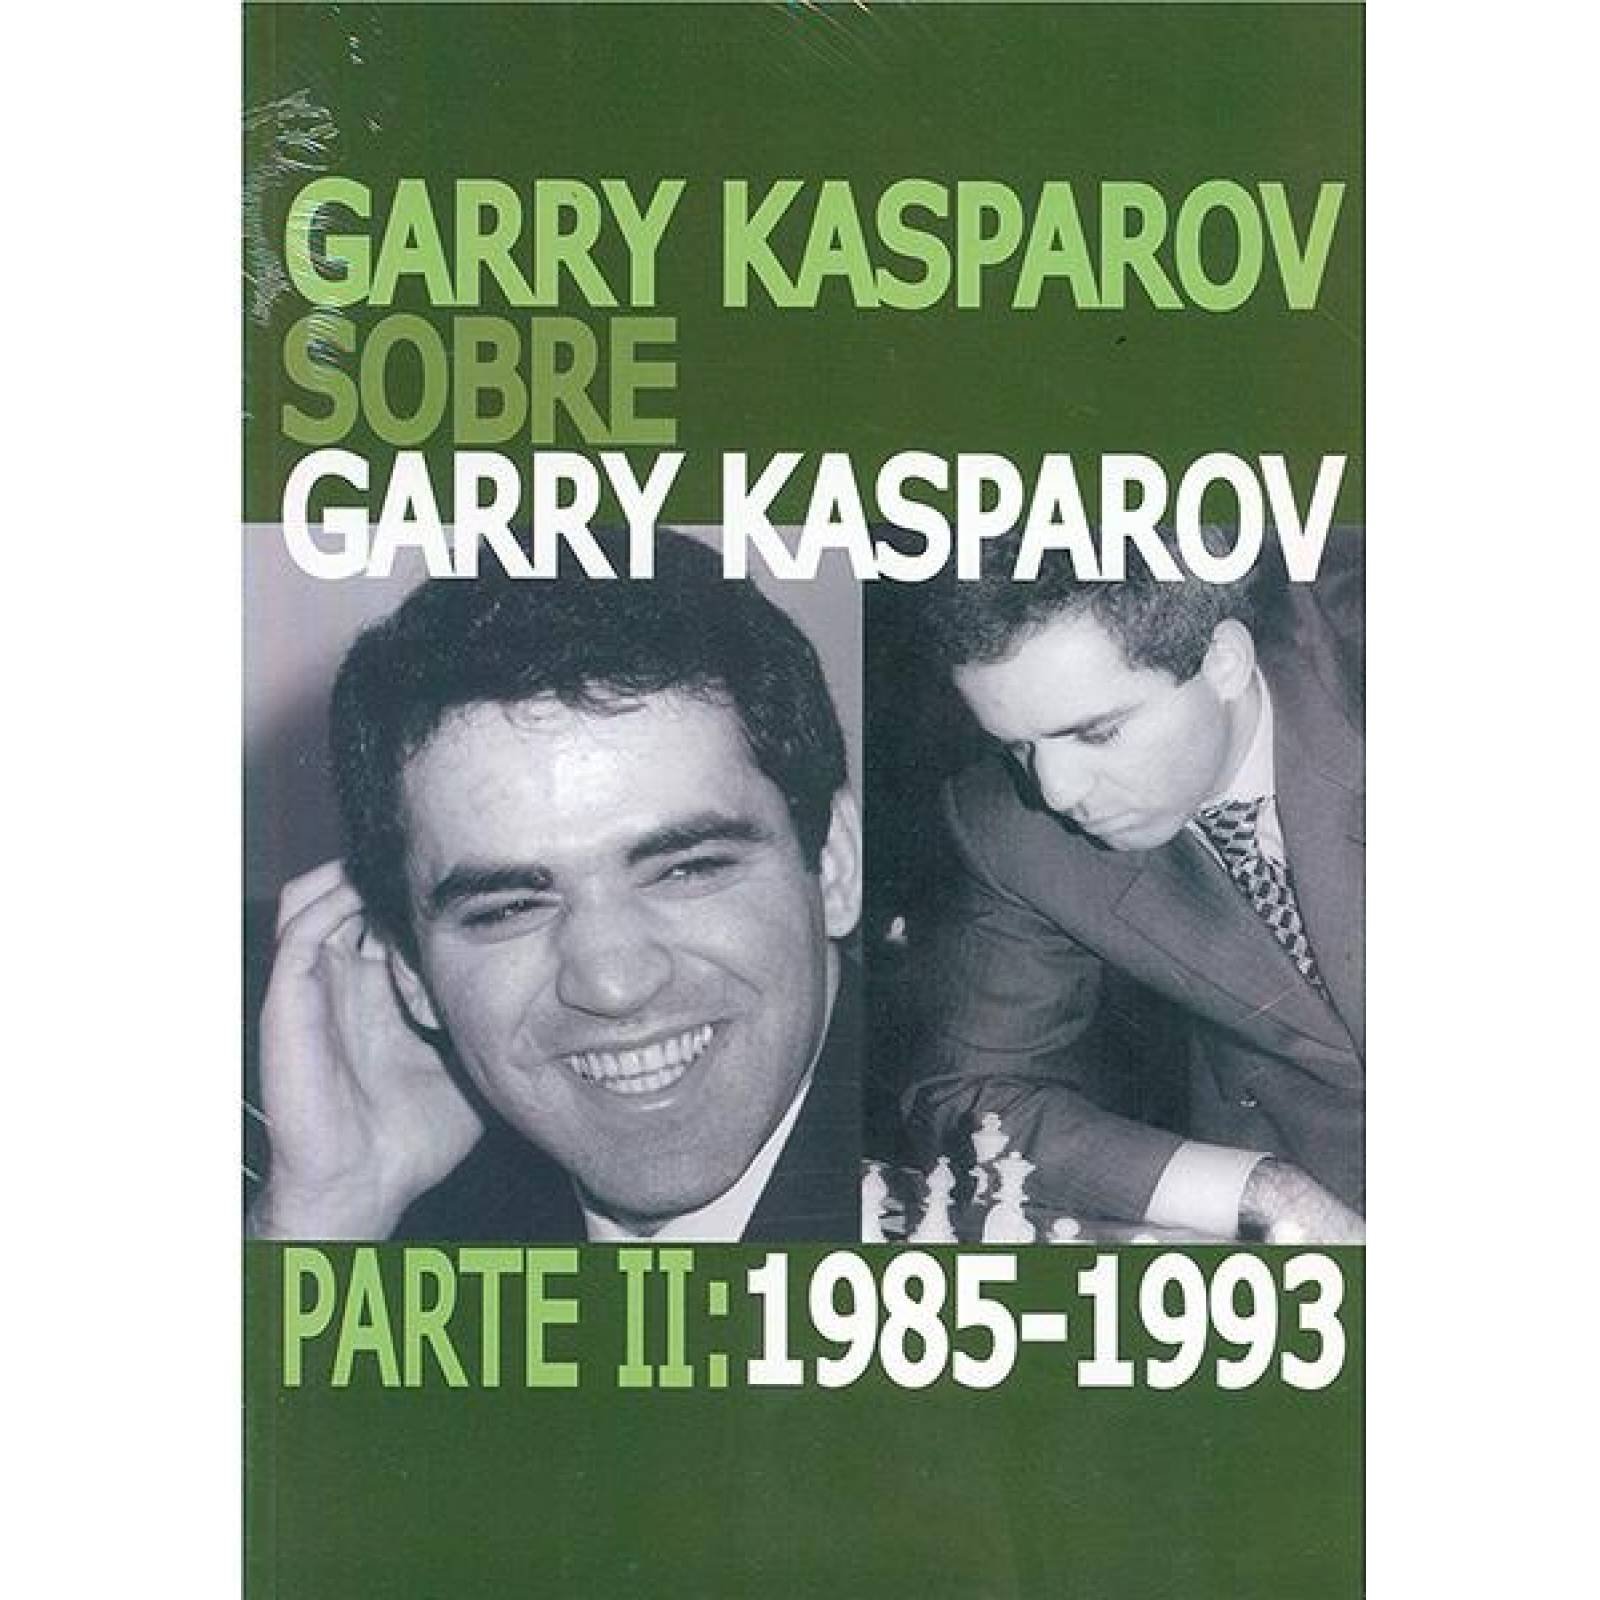 Garry kasparov sobre garry kasparov ii 